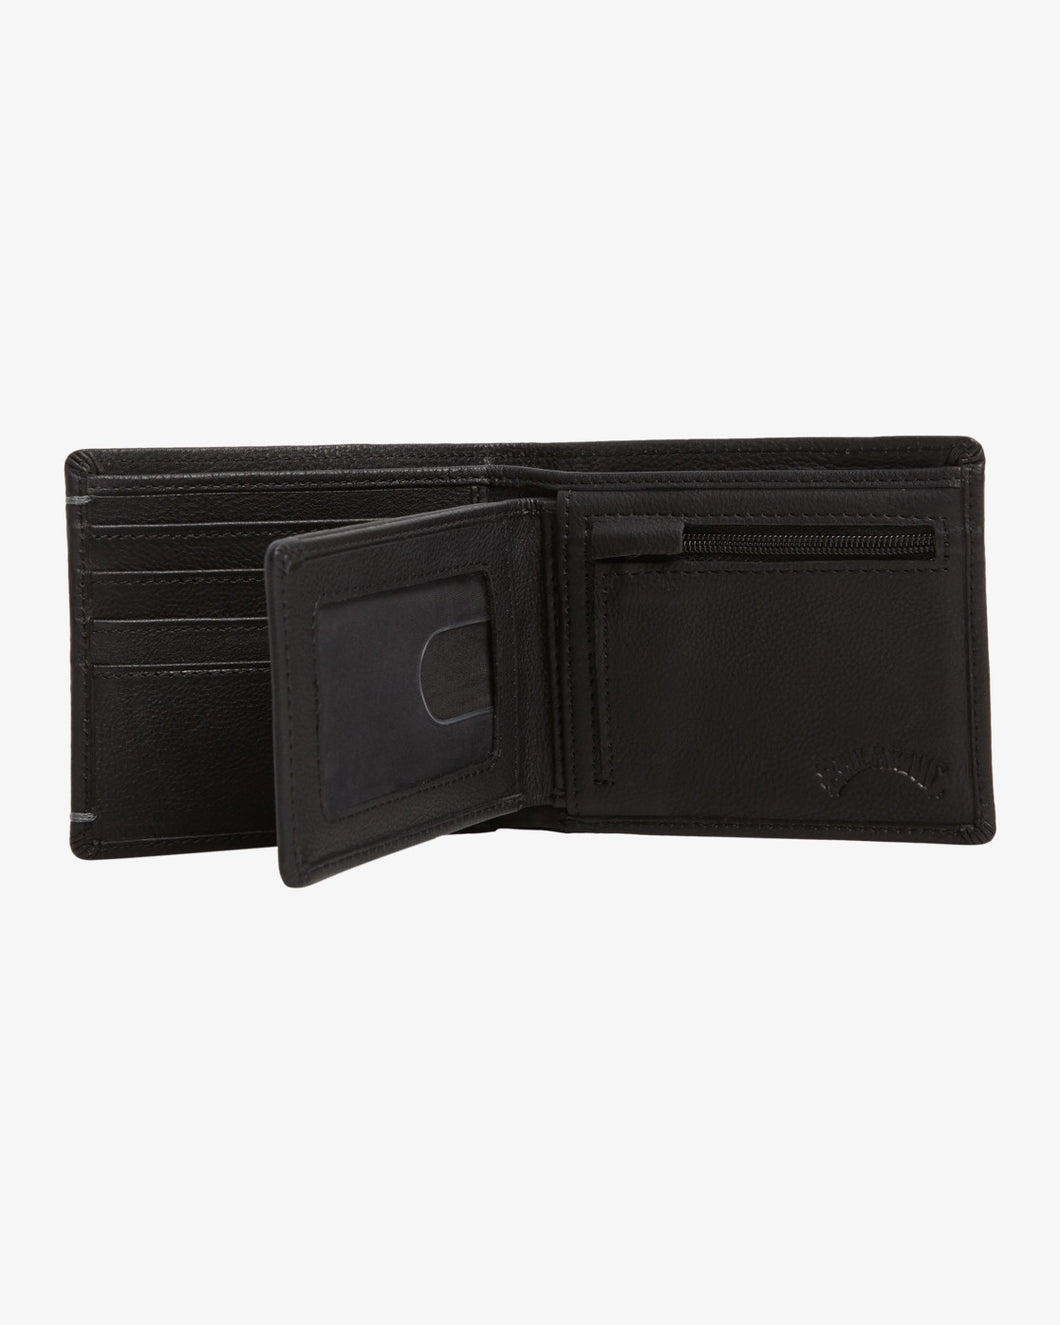 Rockaway Leather Wallet